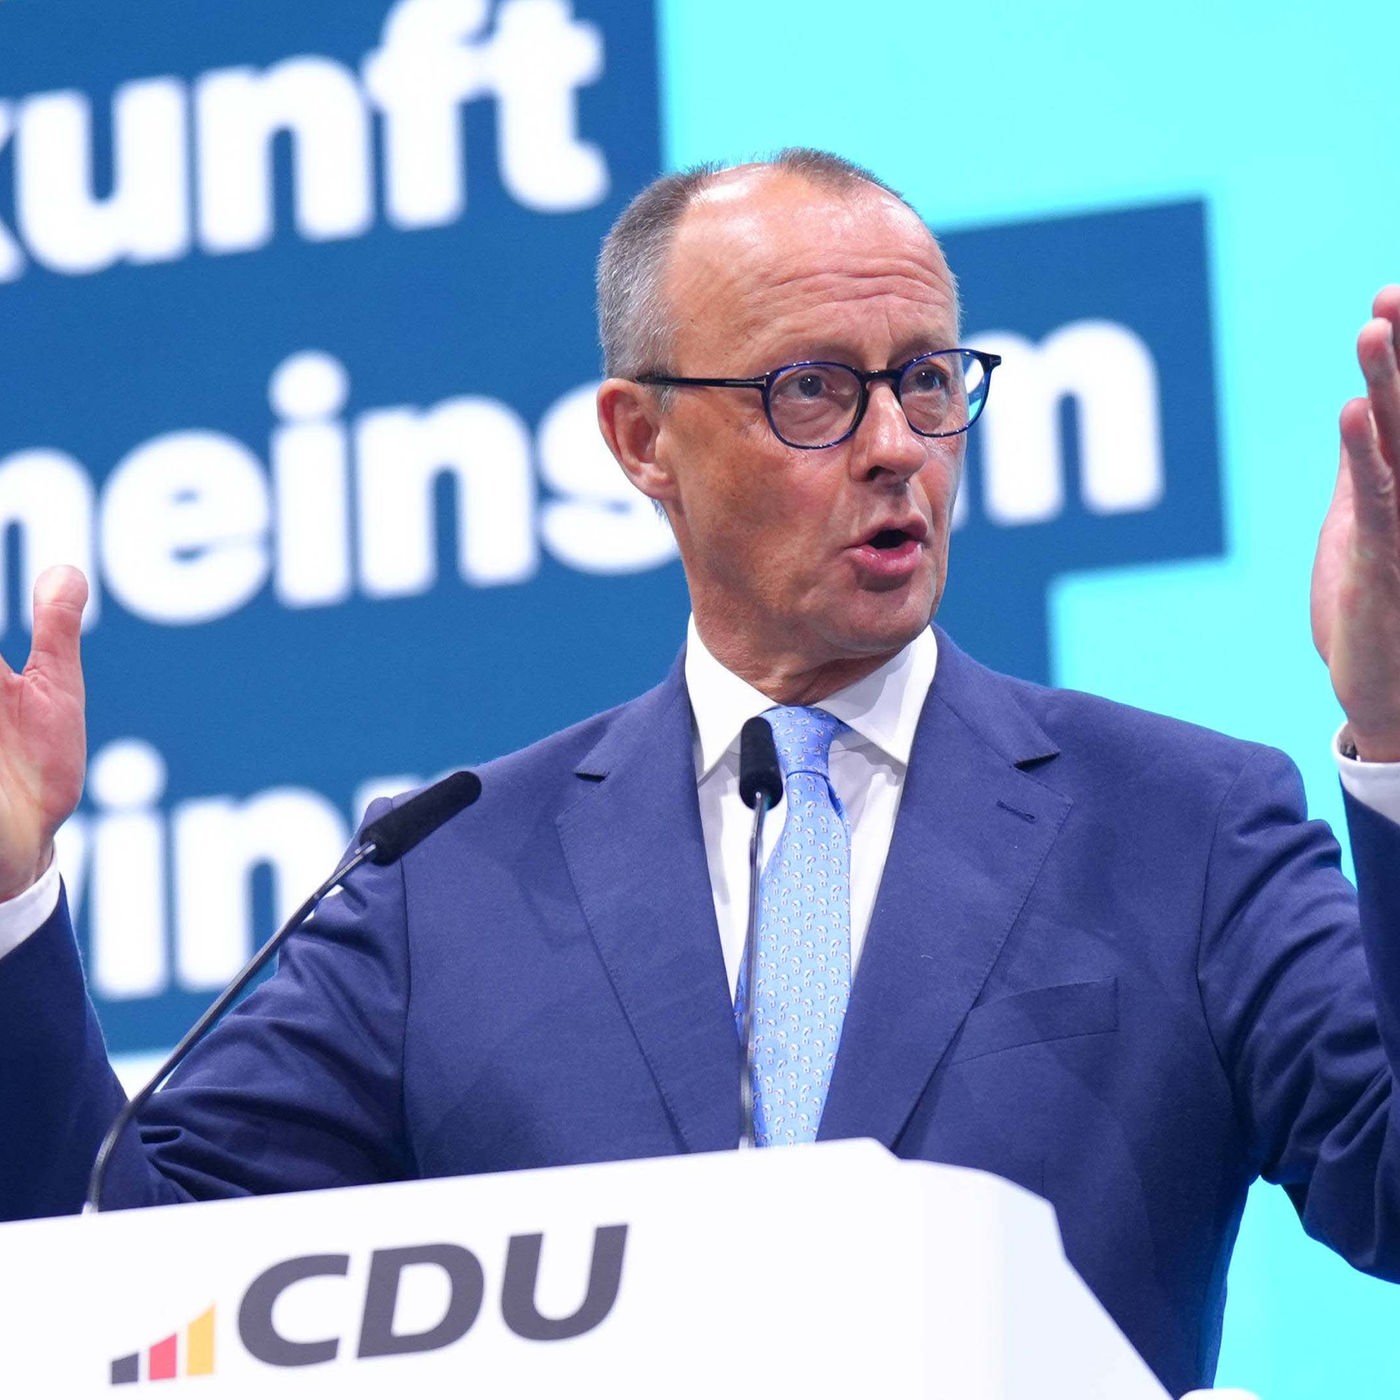 Politologe über CDU: "Sehr heterogene Partei geworden"